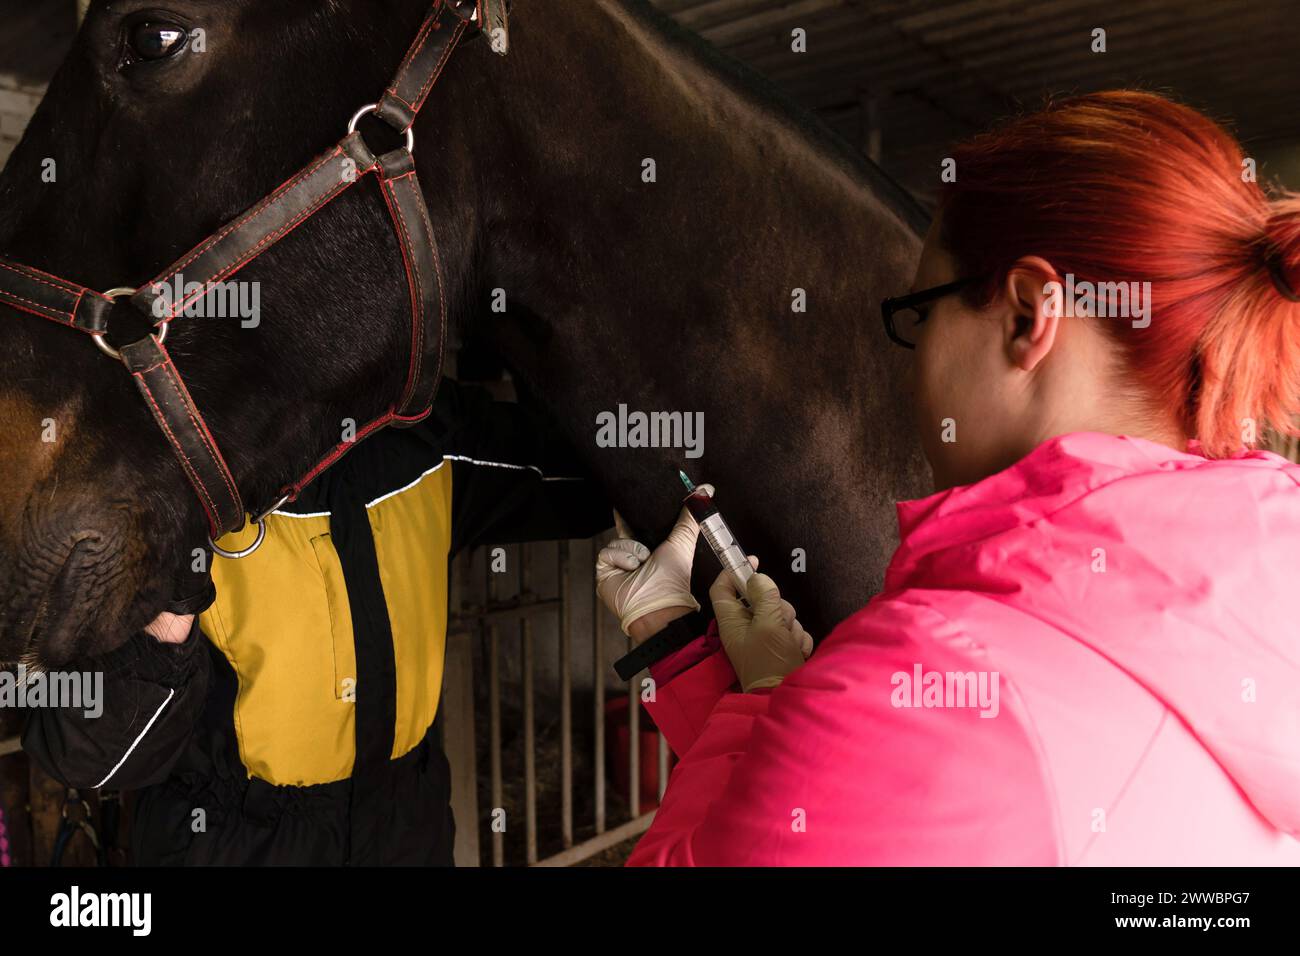 Vétérinaire administrant l'injection à cheval. Prélèvement de sang veineux pour analyse Banque D'Images